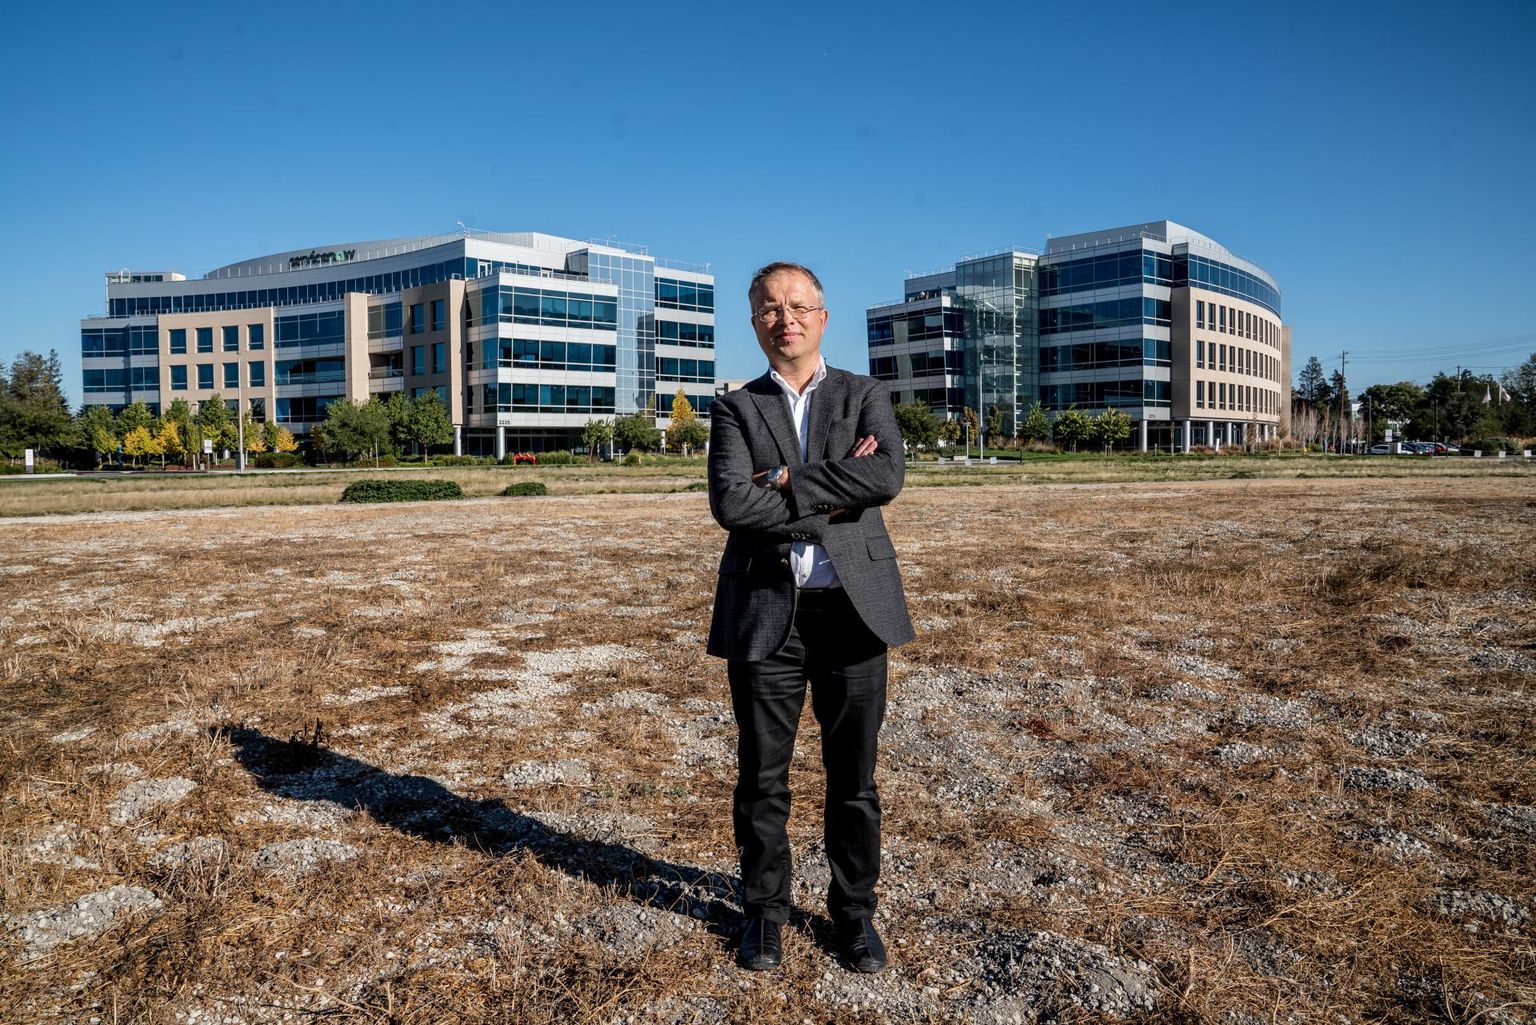 Ain Indermitte Silicon Valley südames ServiceNow’ kahe büroohoone ees rohtunud platsil, kuhu lähiajal kerkib kiirelt kasvavale firmale veel üks viiekorruseline kontorihoone.